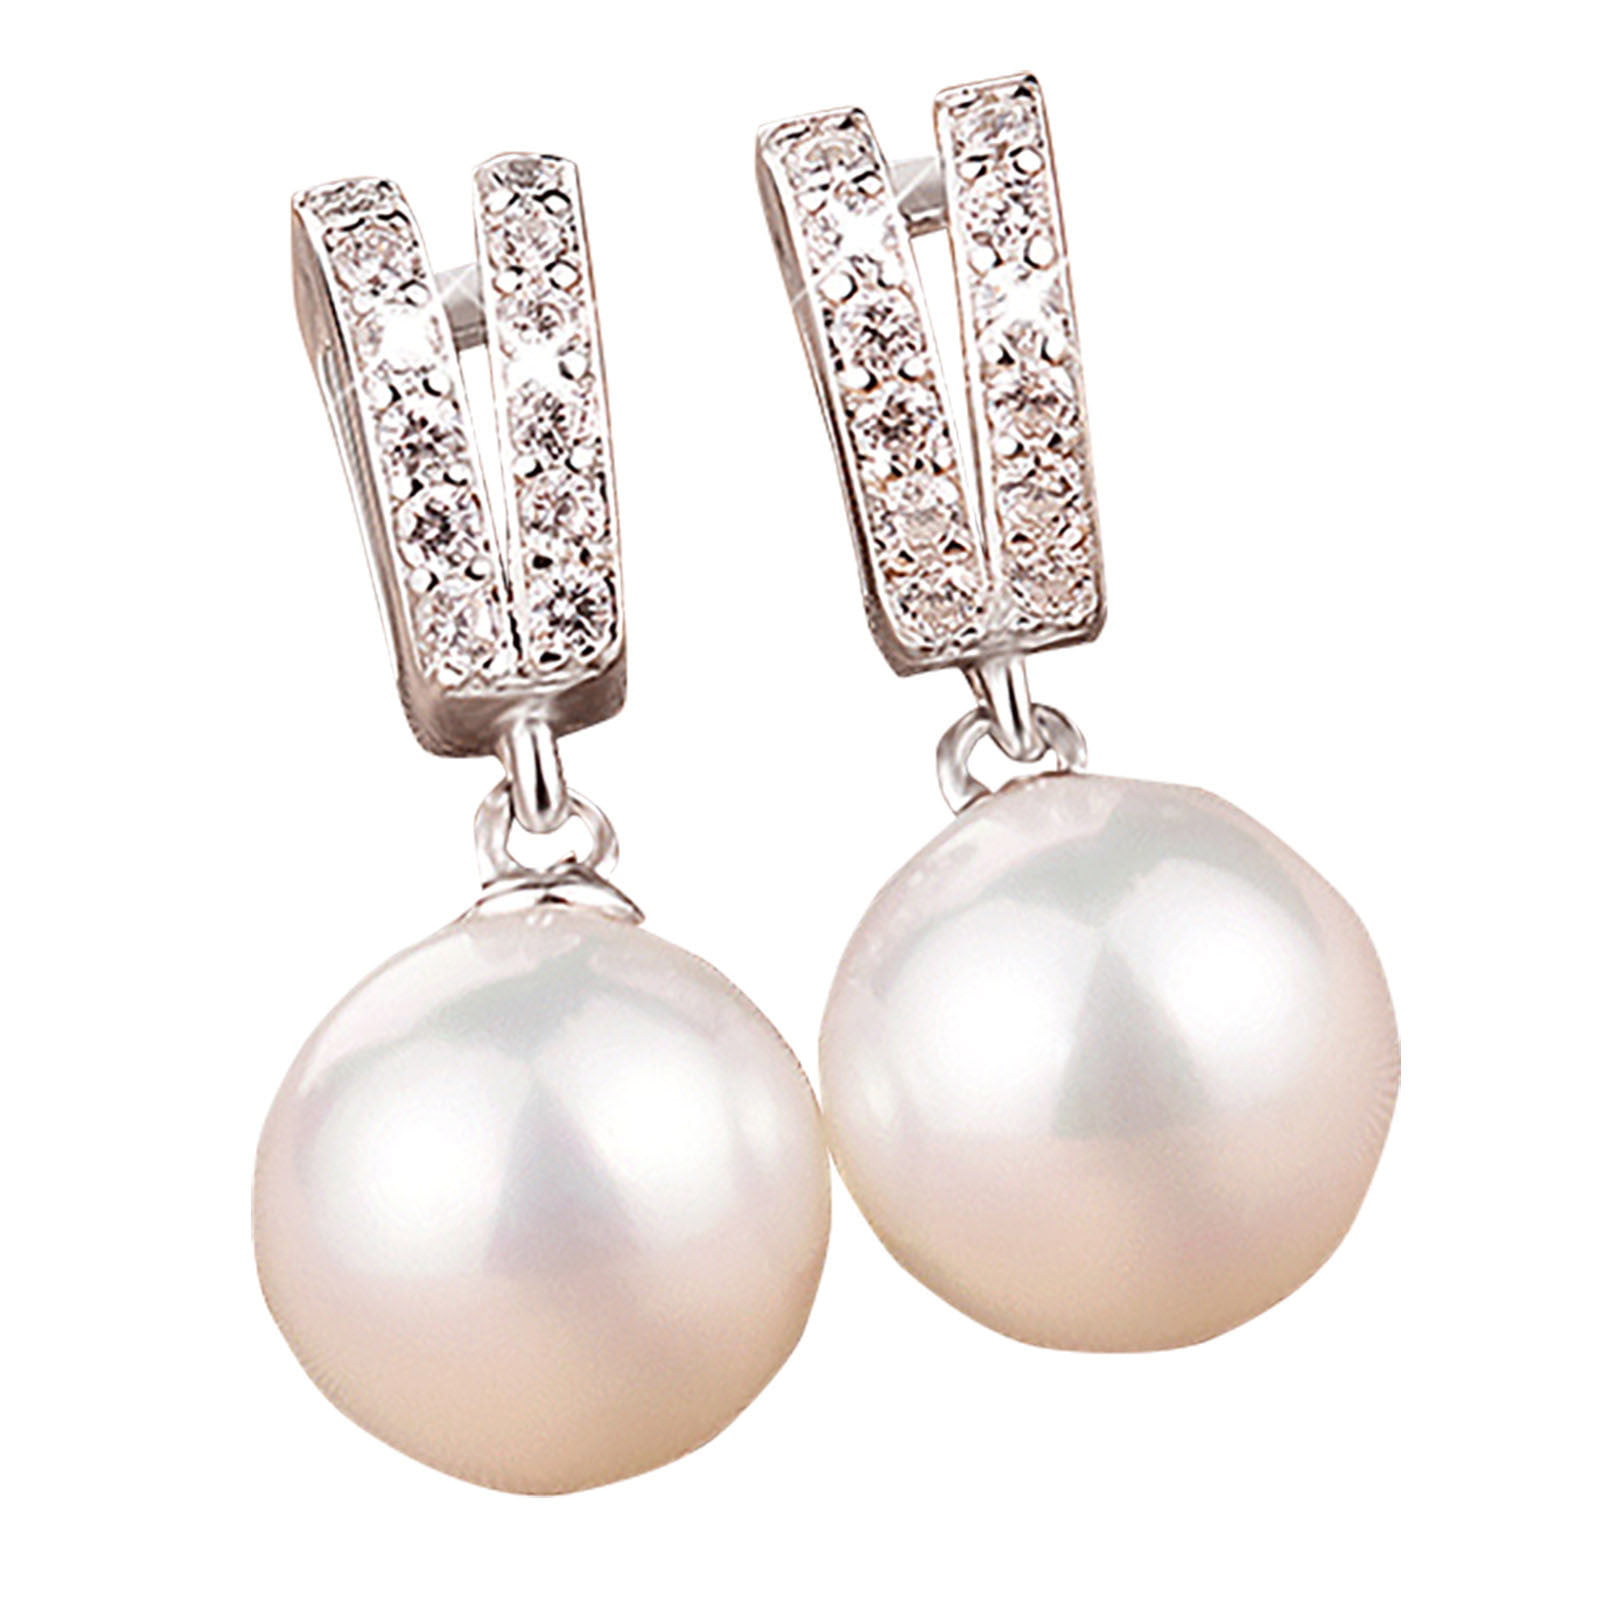 New Rhodium Jewelry Women Petty Beads Zircon Pearl Silver Plated Earrings 